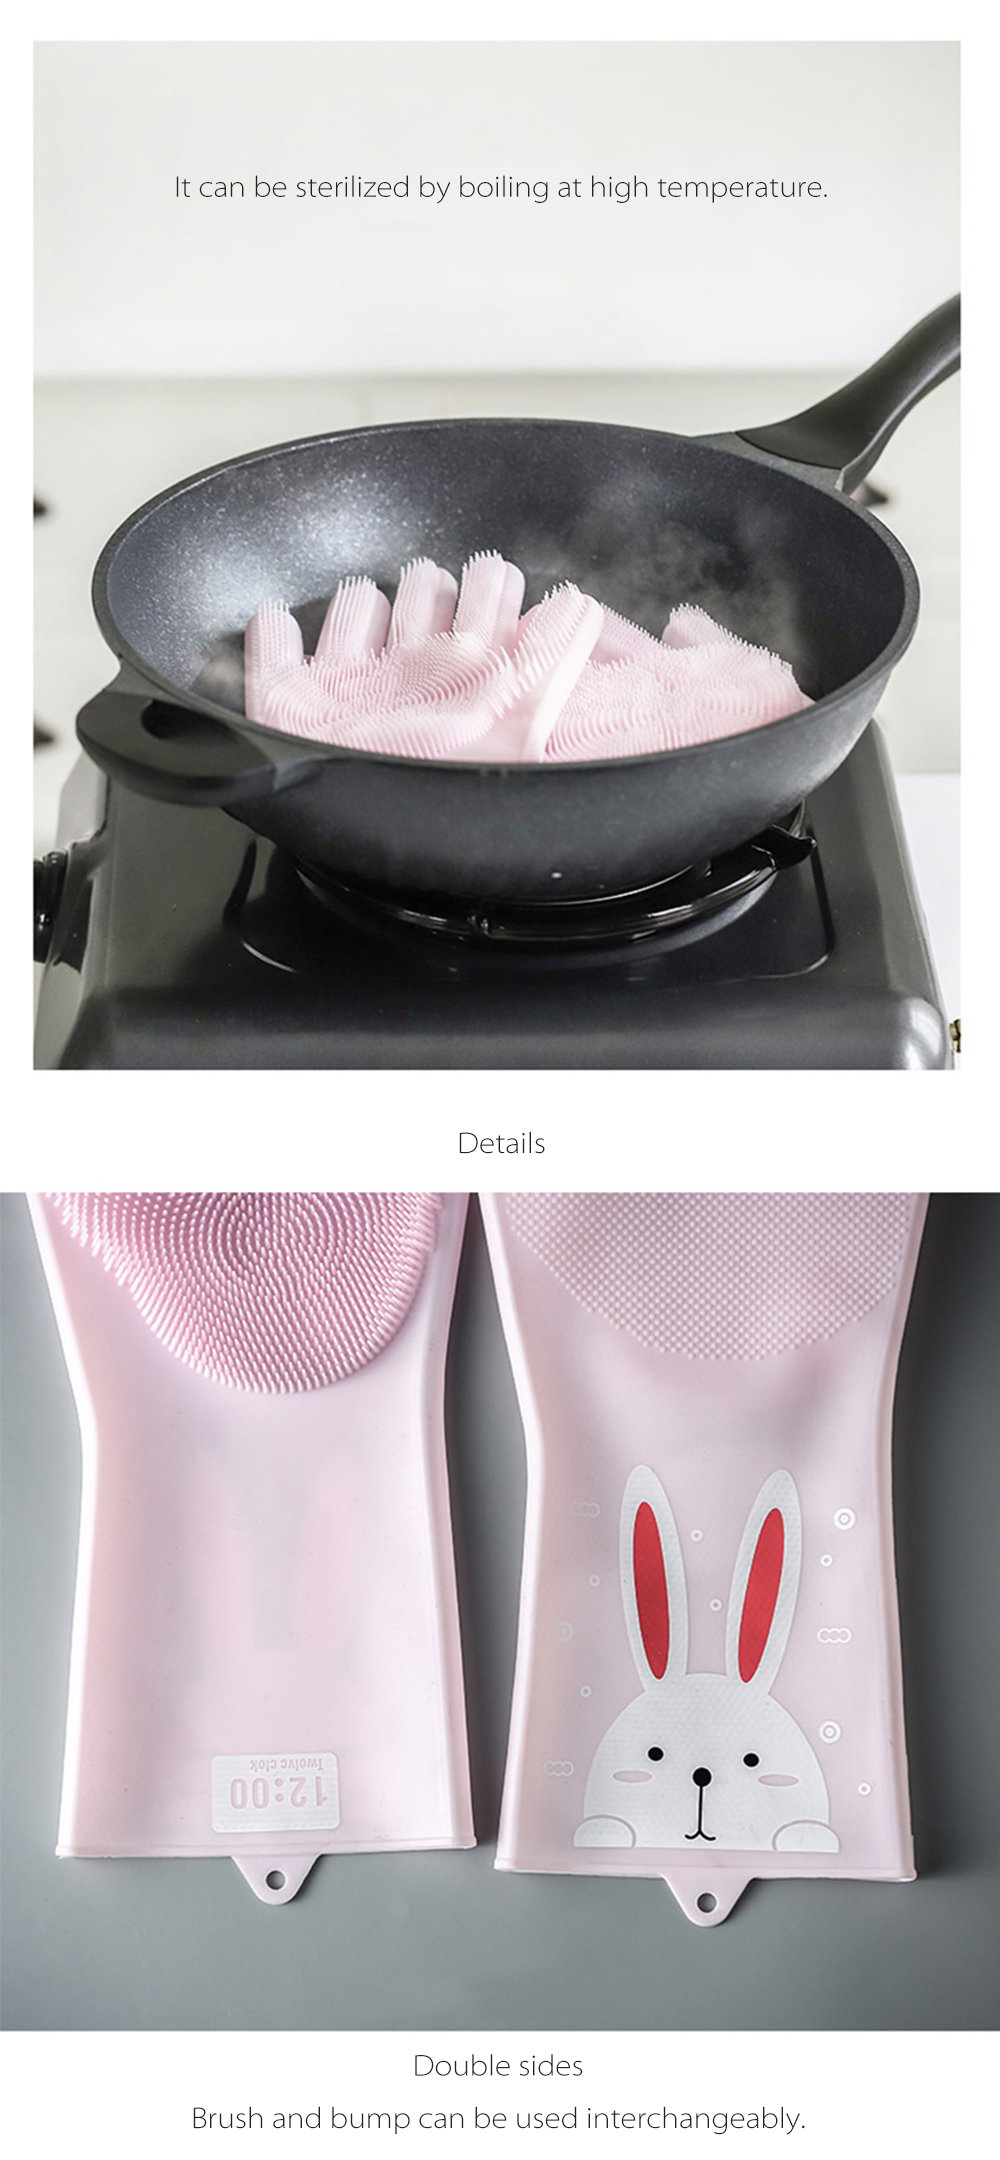 Silicone Dishwashing Gloves Cute Style